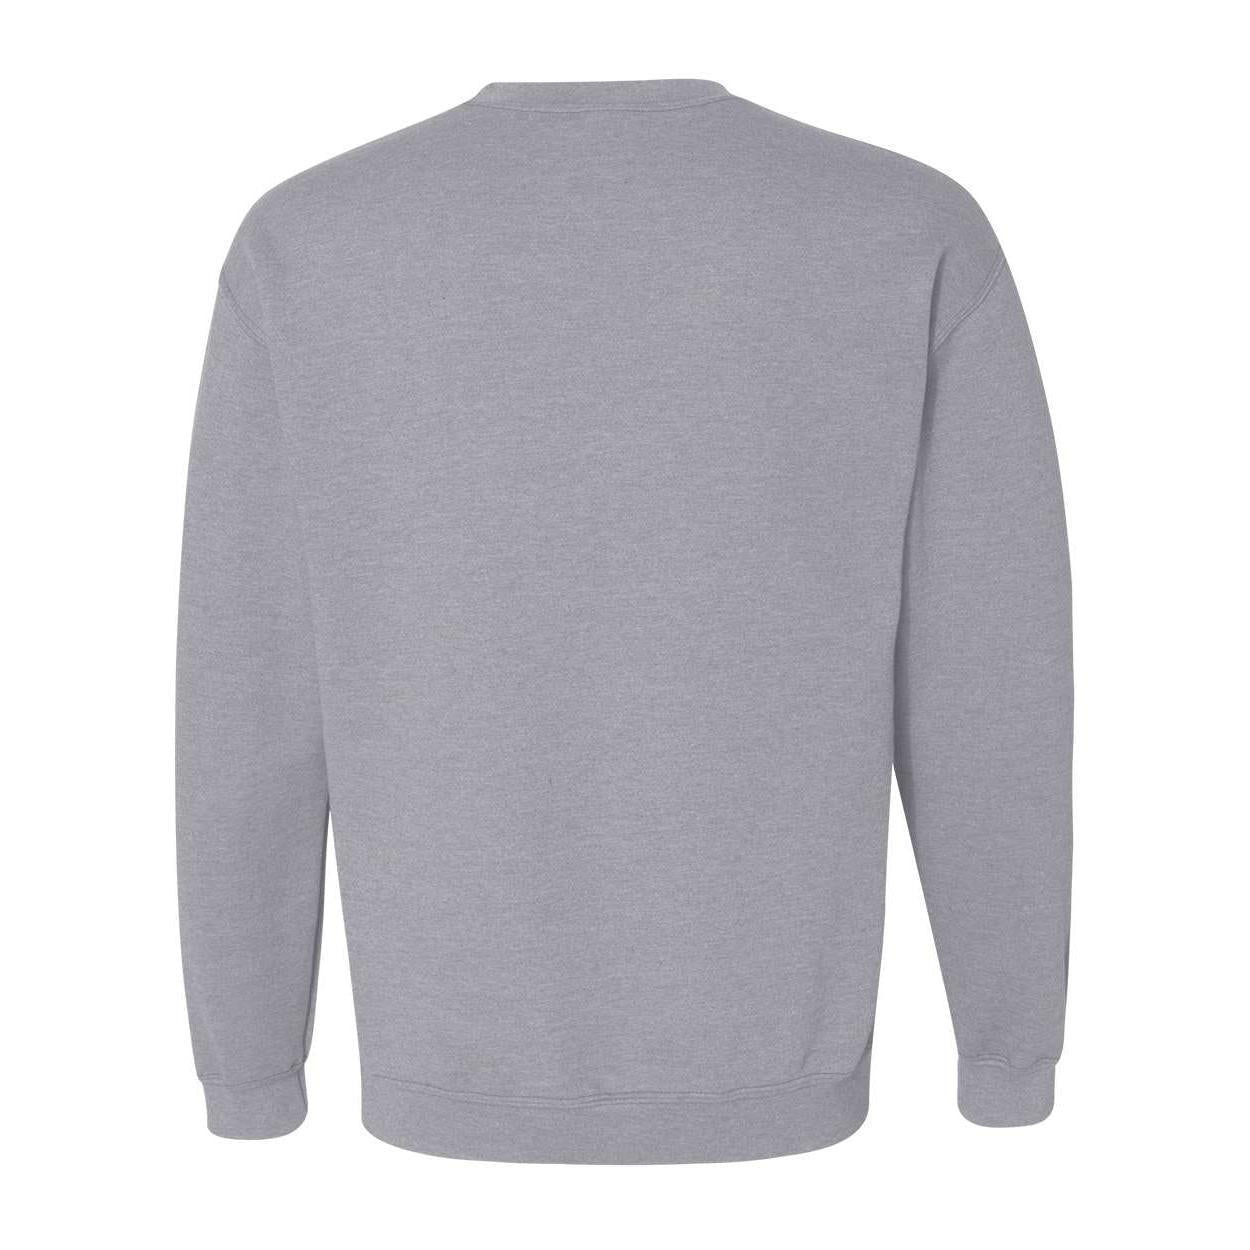 Athletic Brewing Co Crewneck Sweatshirt - Grey